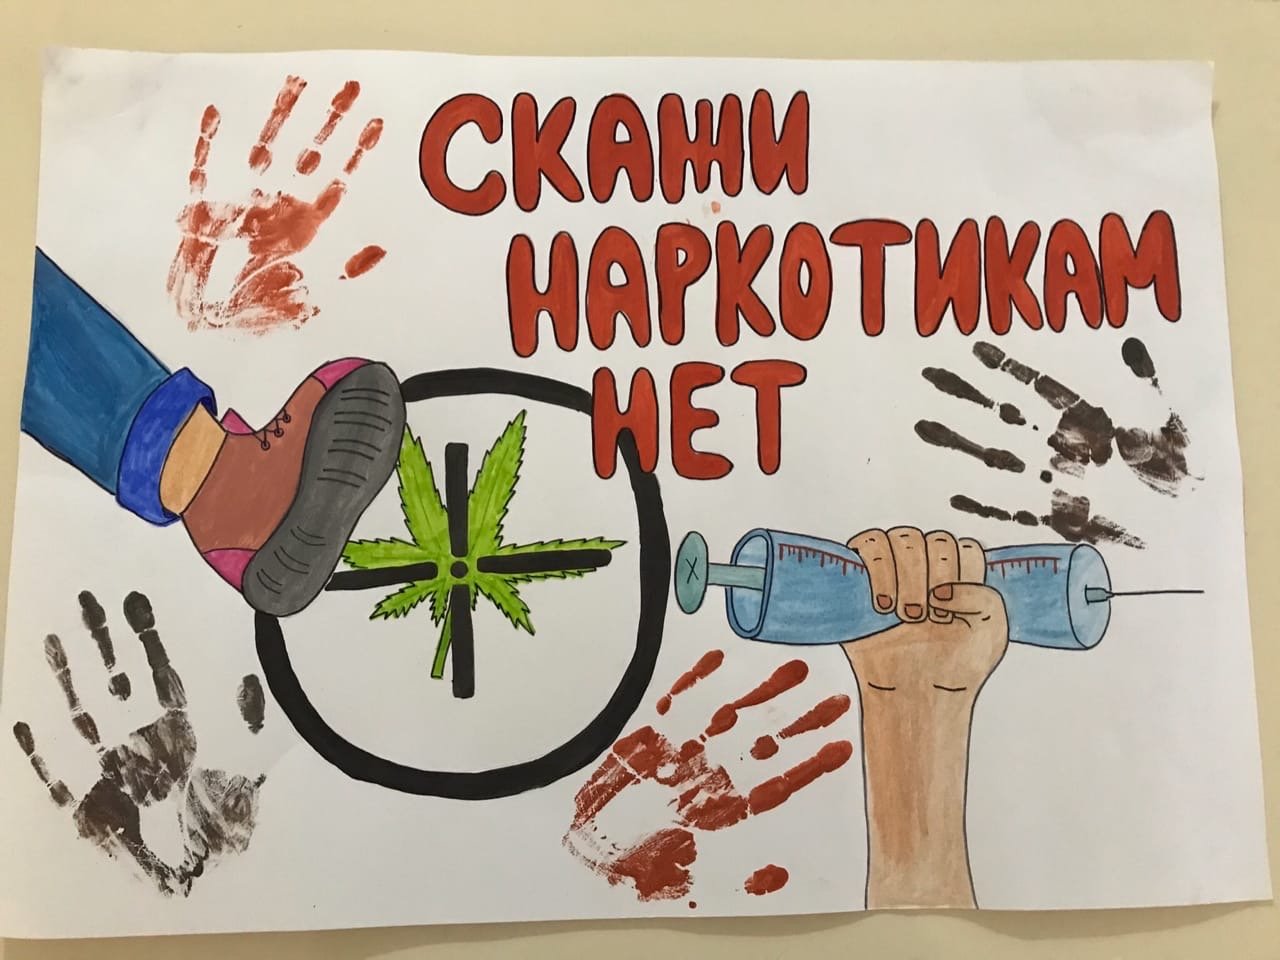 Картинка наркотики рисунки фильм территория безопасности наркотики